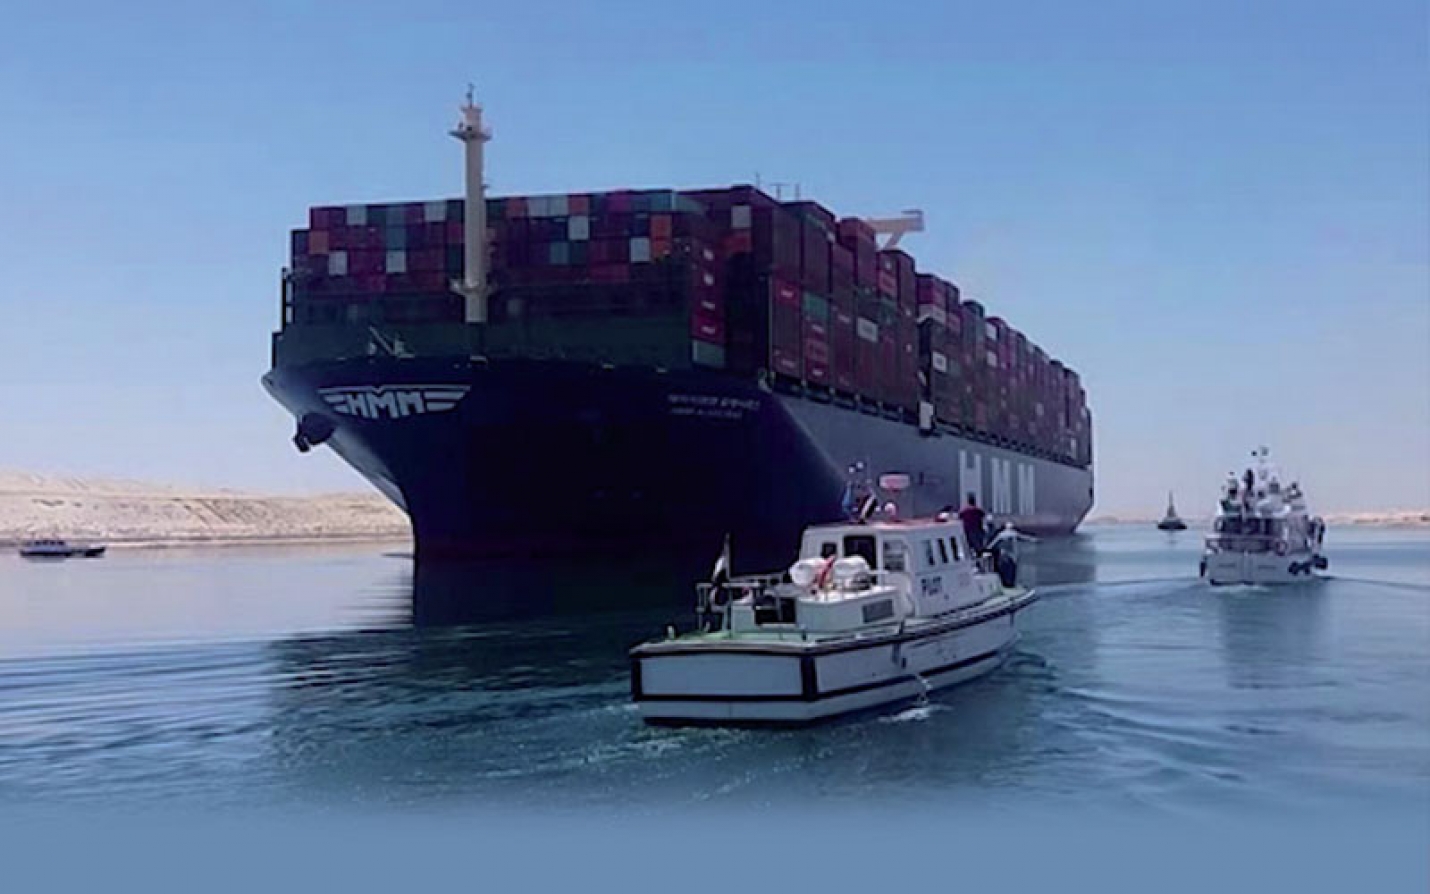 Le plus grand porte-conteneurs passe par le canal de Suez